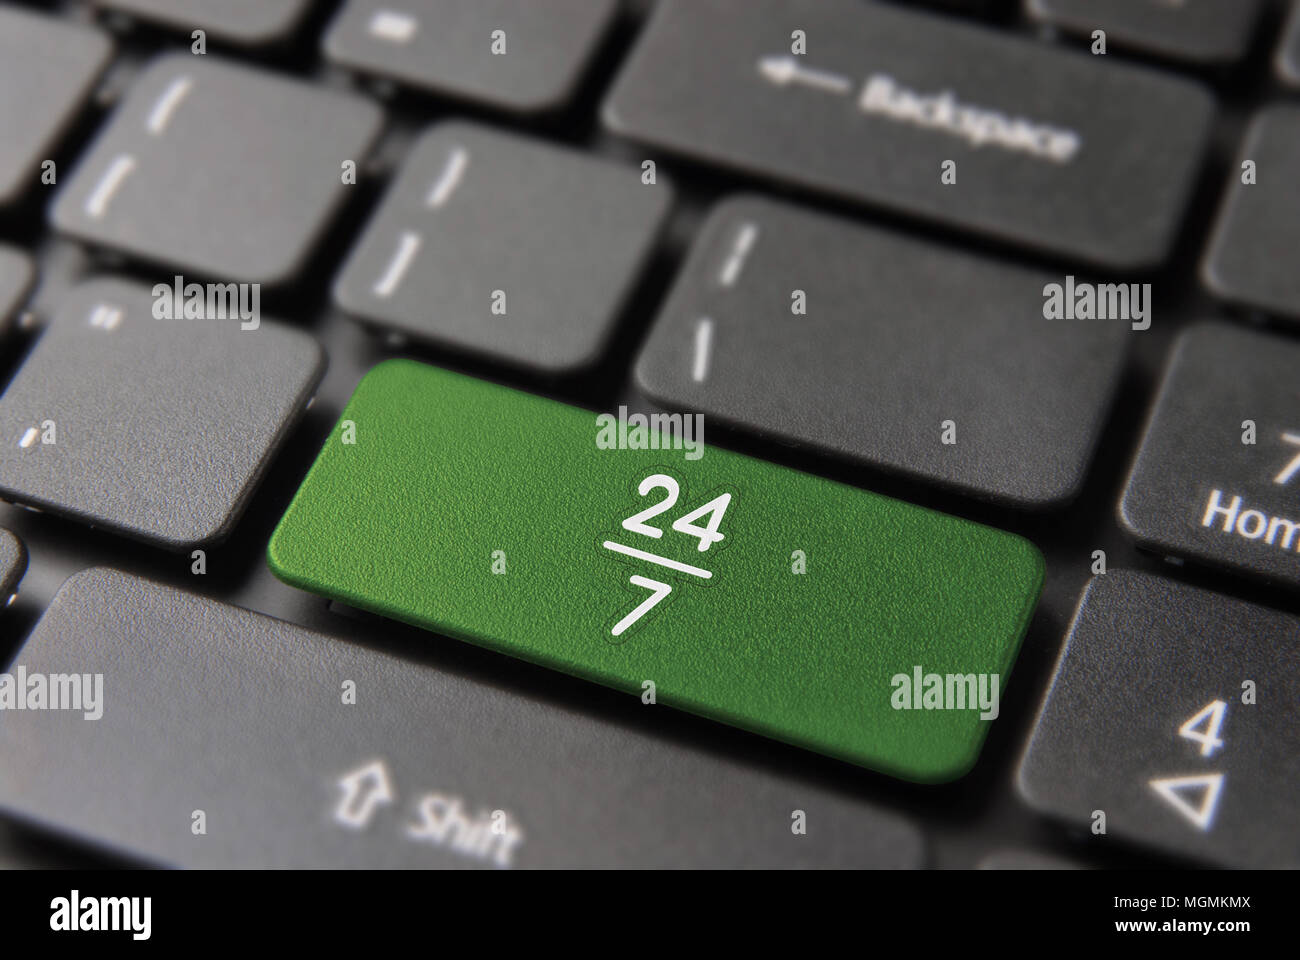 Immer ein offenes Konzept für 24 Stunden Internet Business, Computer Tastatur Taste mit einem rund um die Uhr auf das Symbol Tastatur in grüner Farbe. Stockfoto